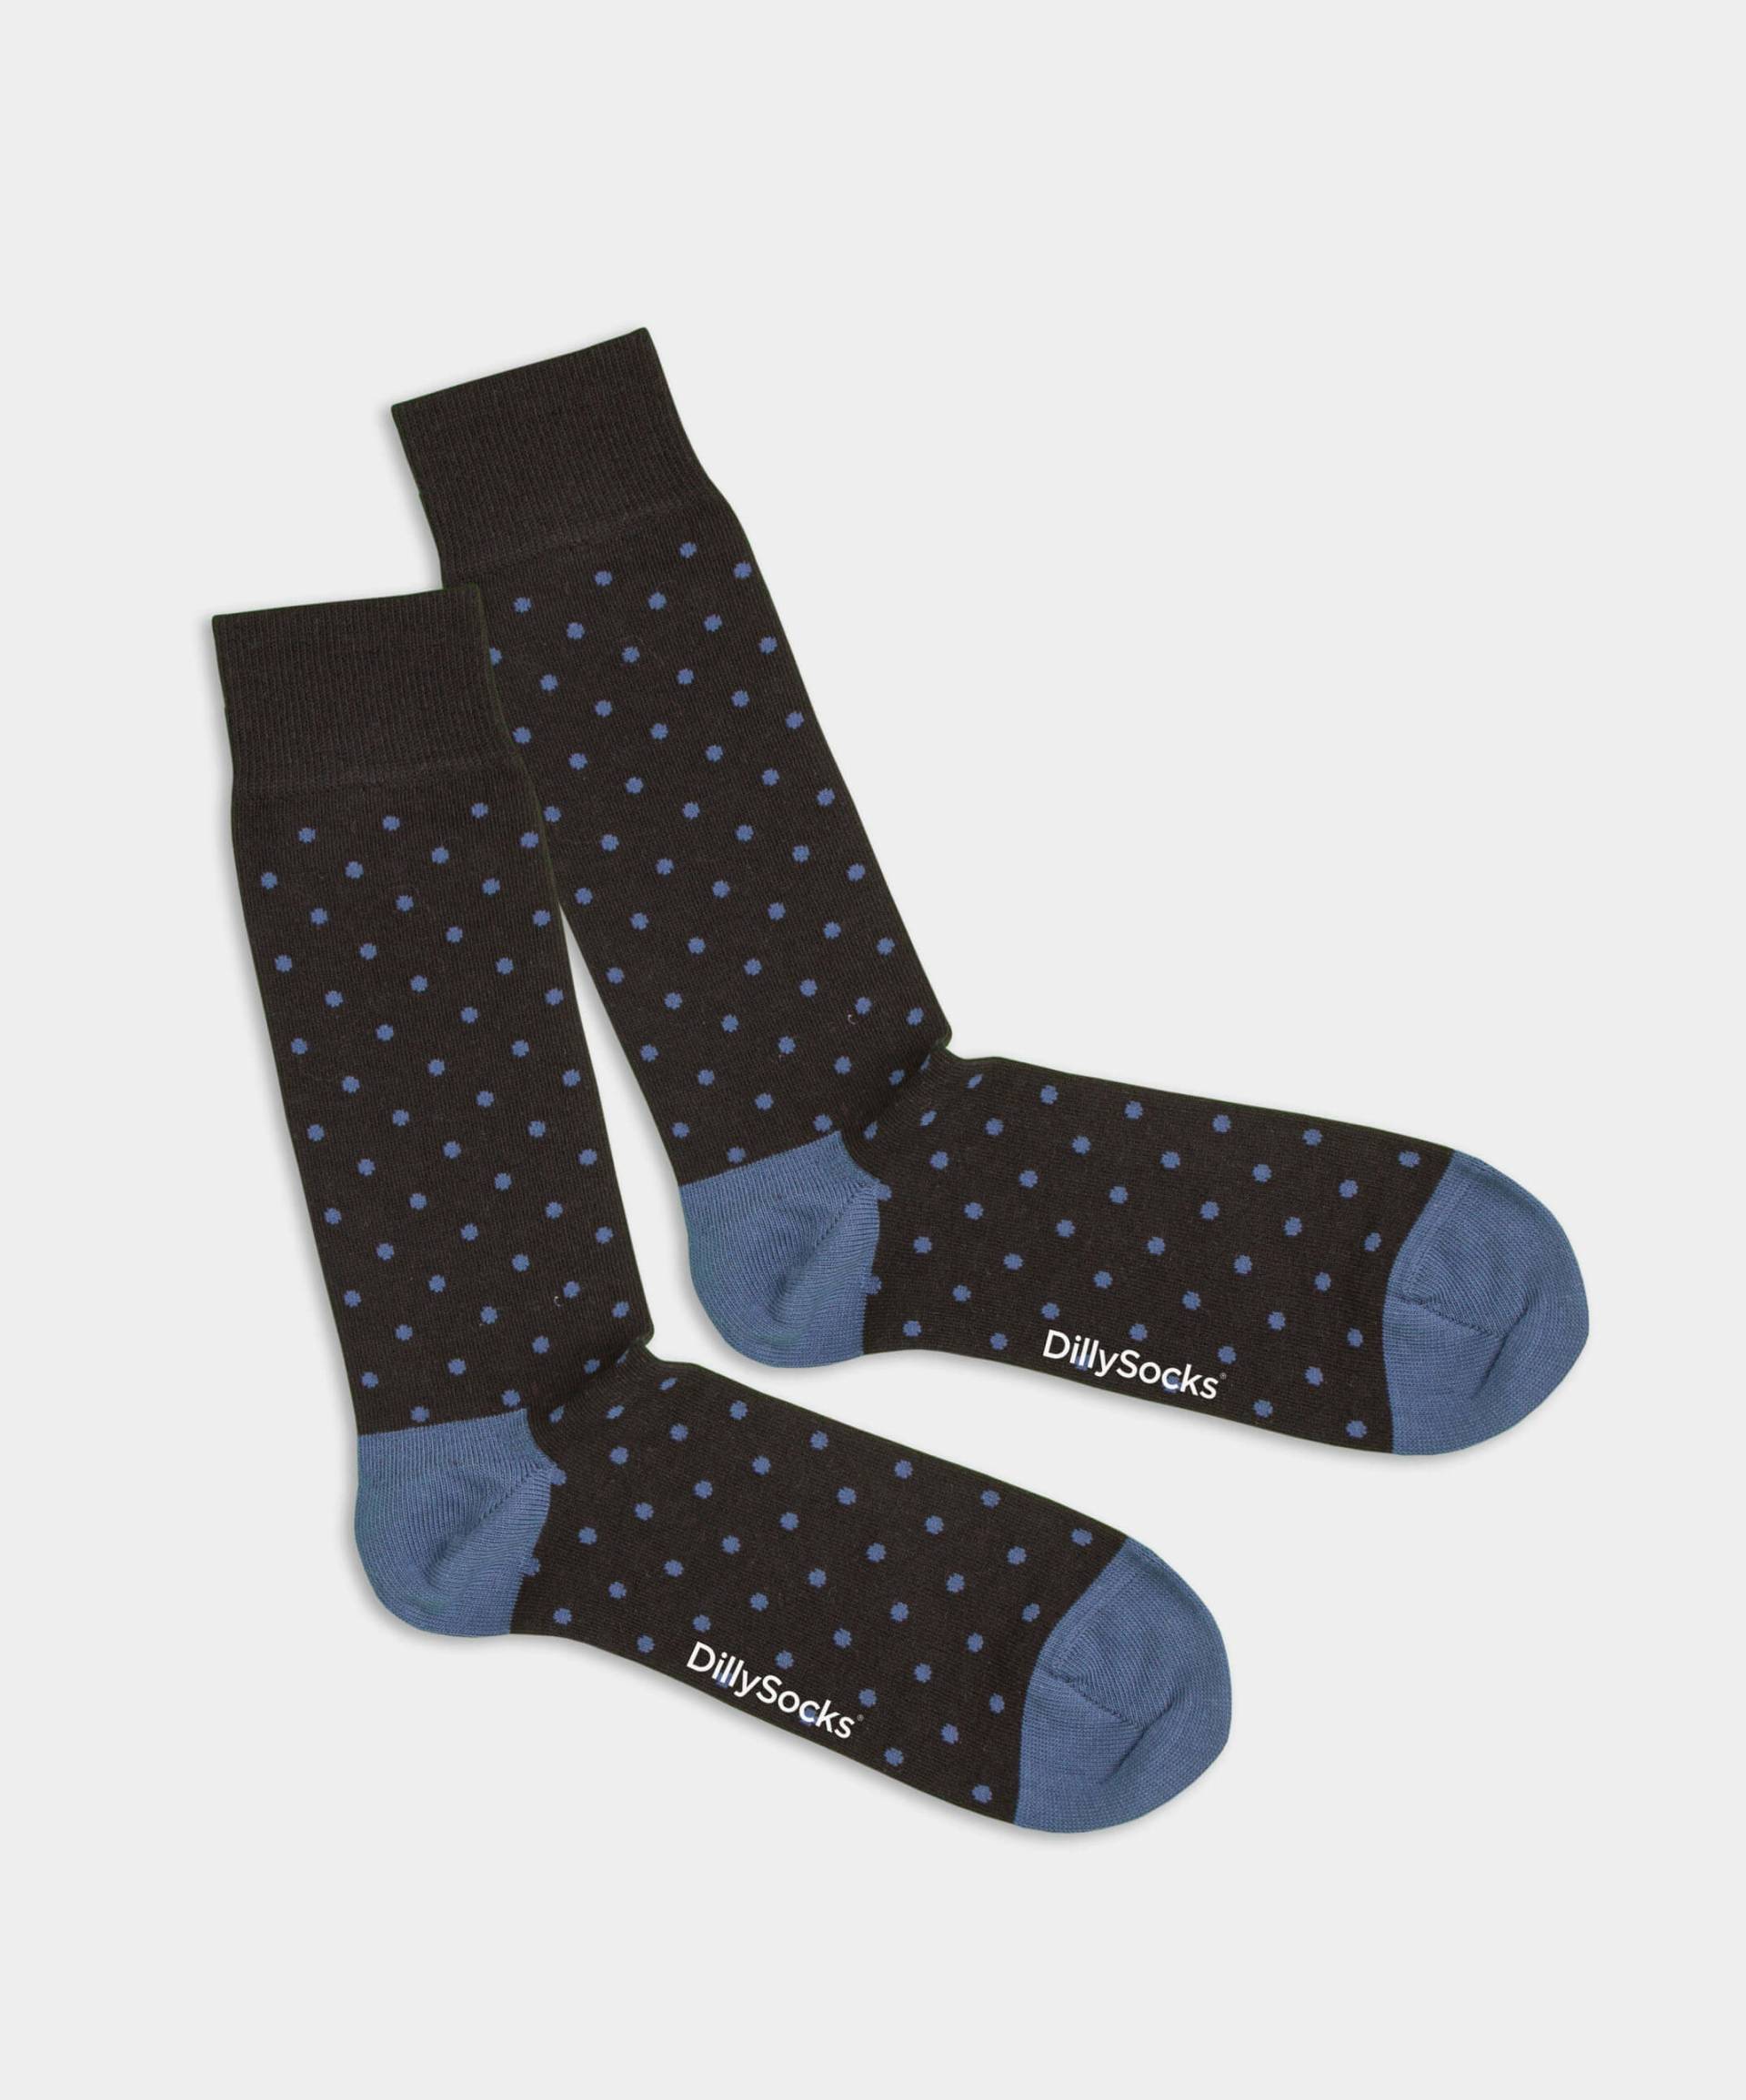 - Socken in Schwarz mit Punkte Motiv/Muster von DillySocks